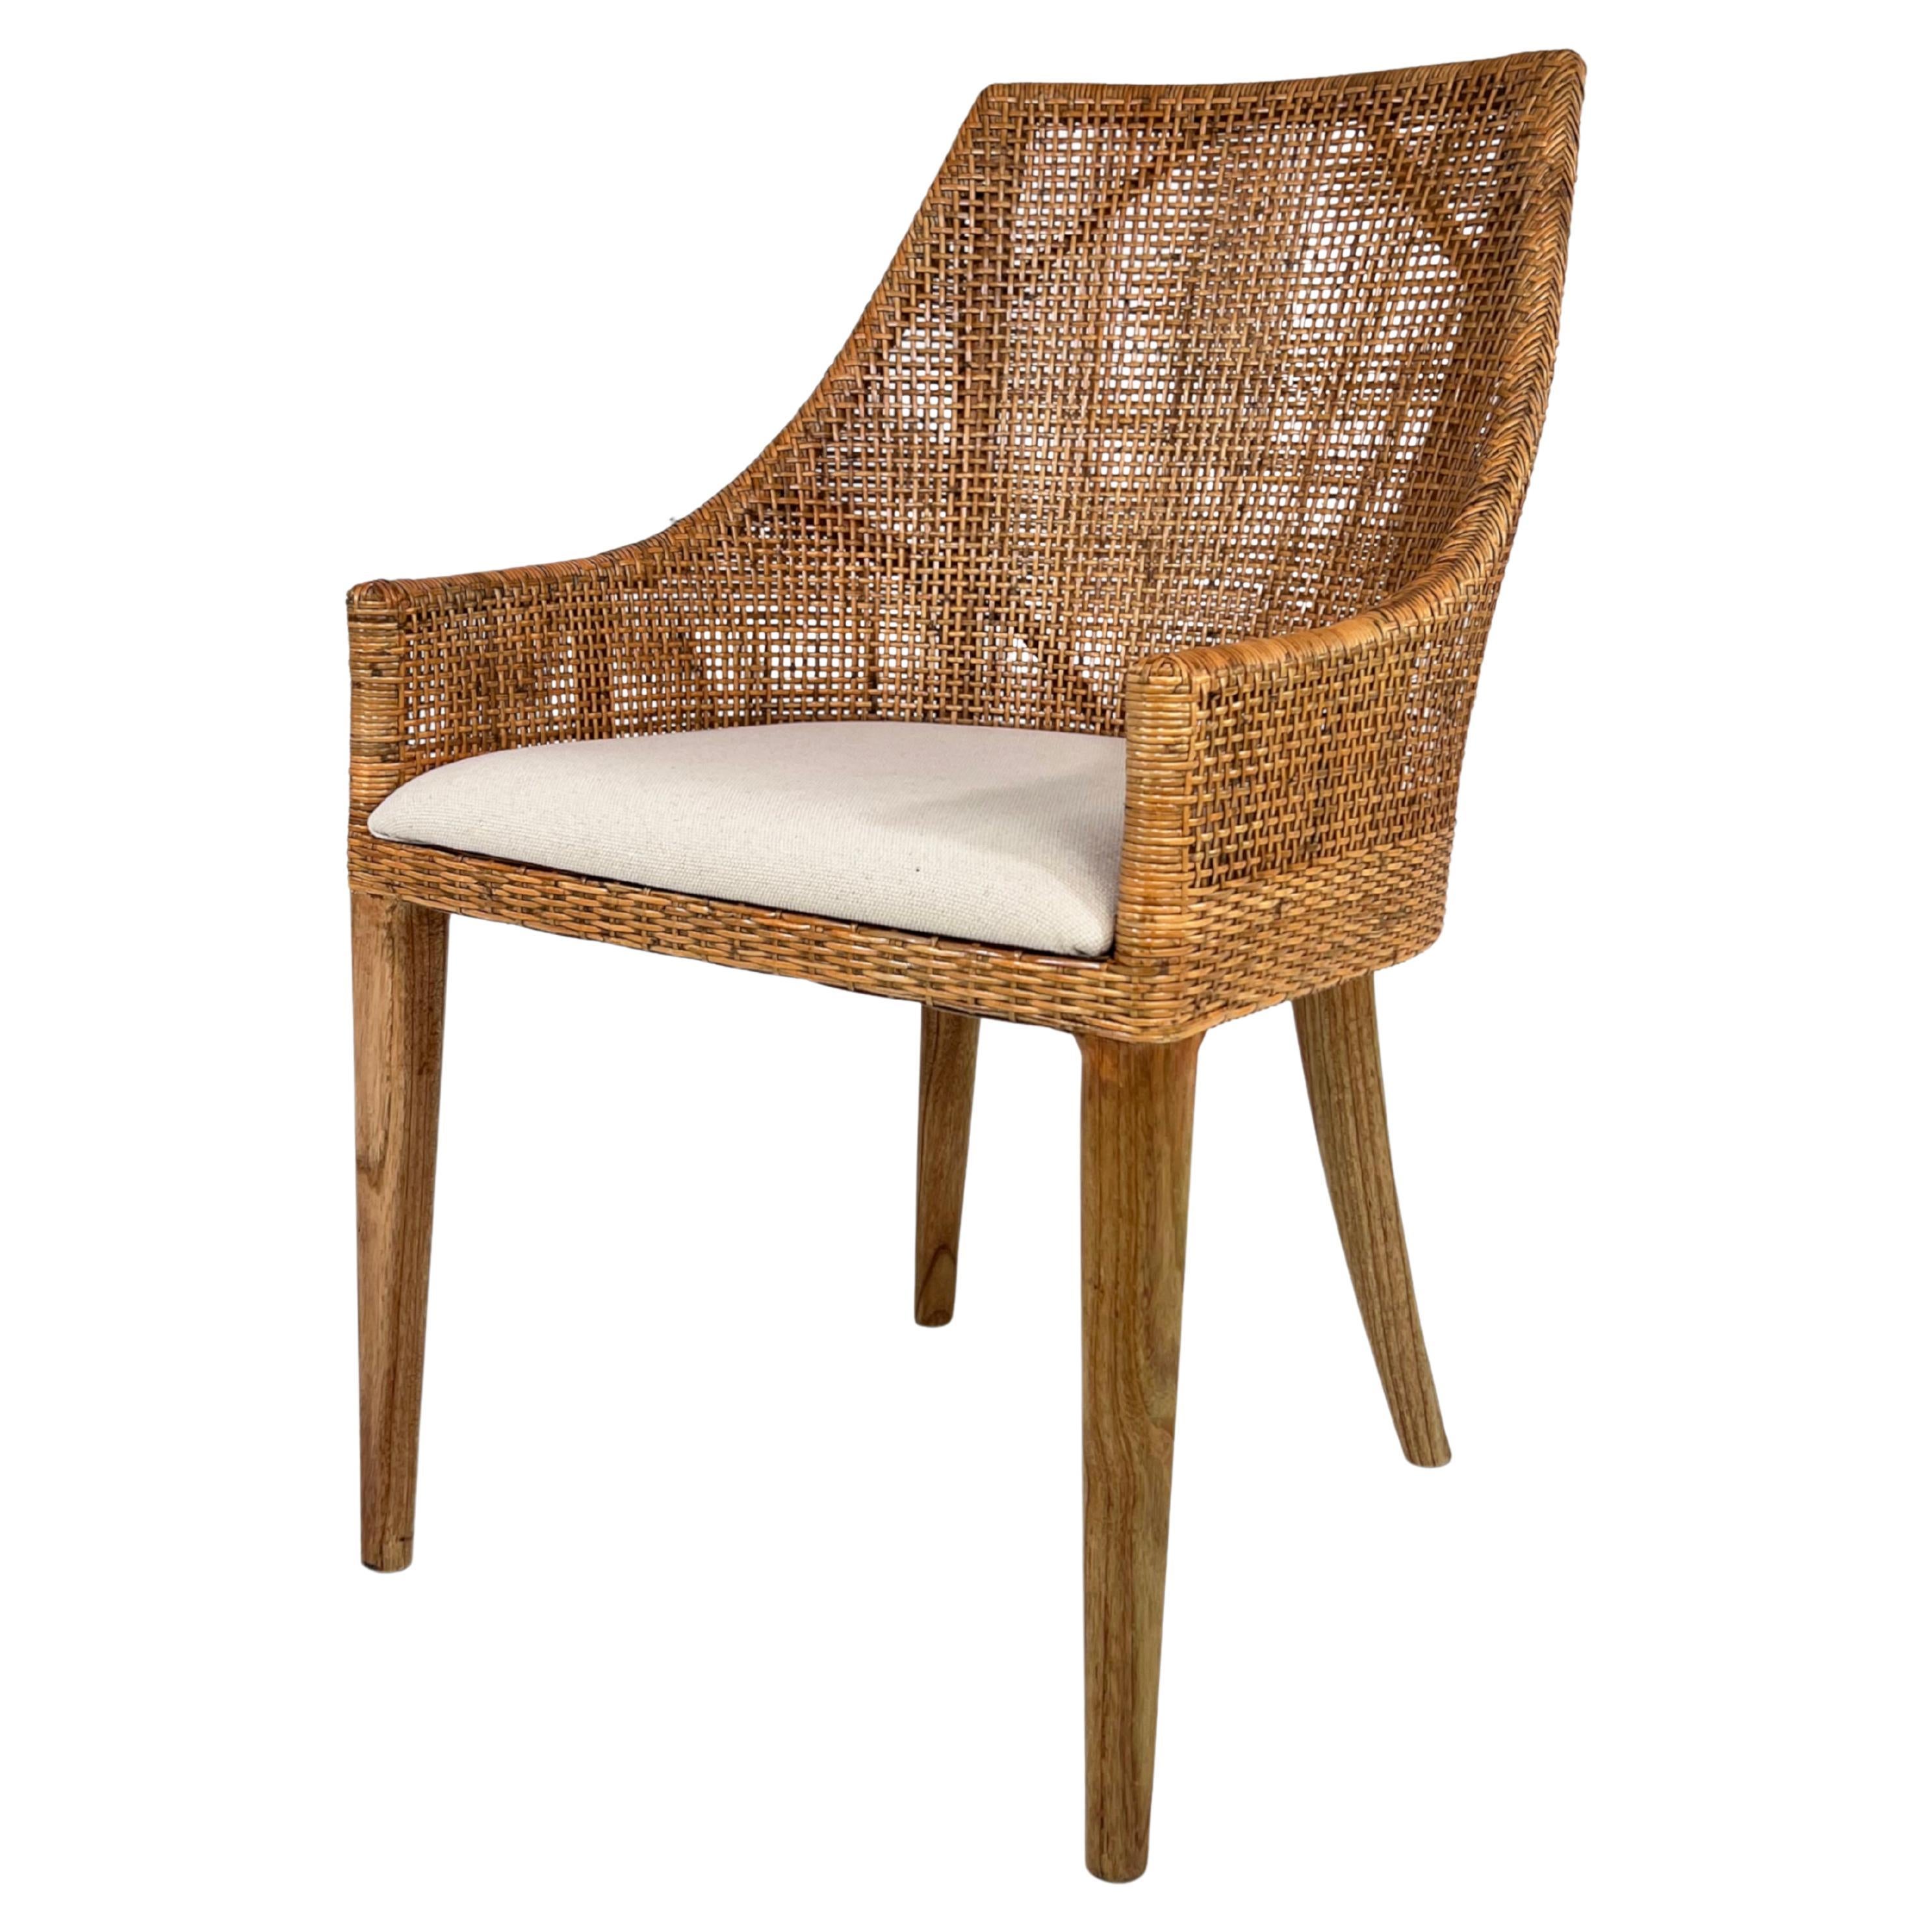 Französischer Design-Sessel aus geflochtenem Rattan und Teakholz mit Holzfuß, handgefertigt